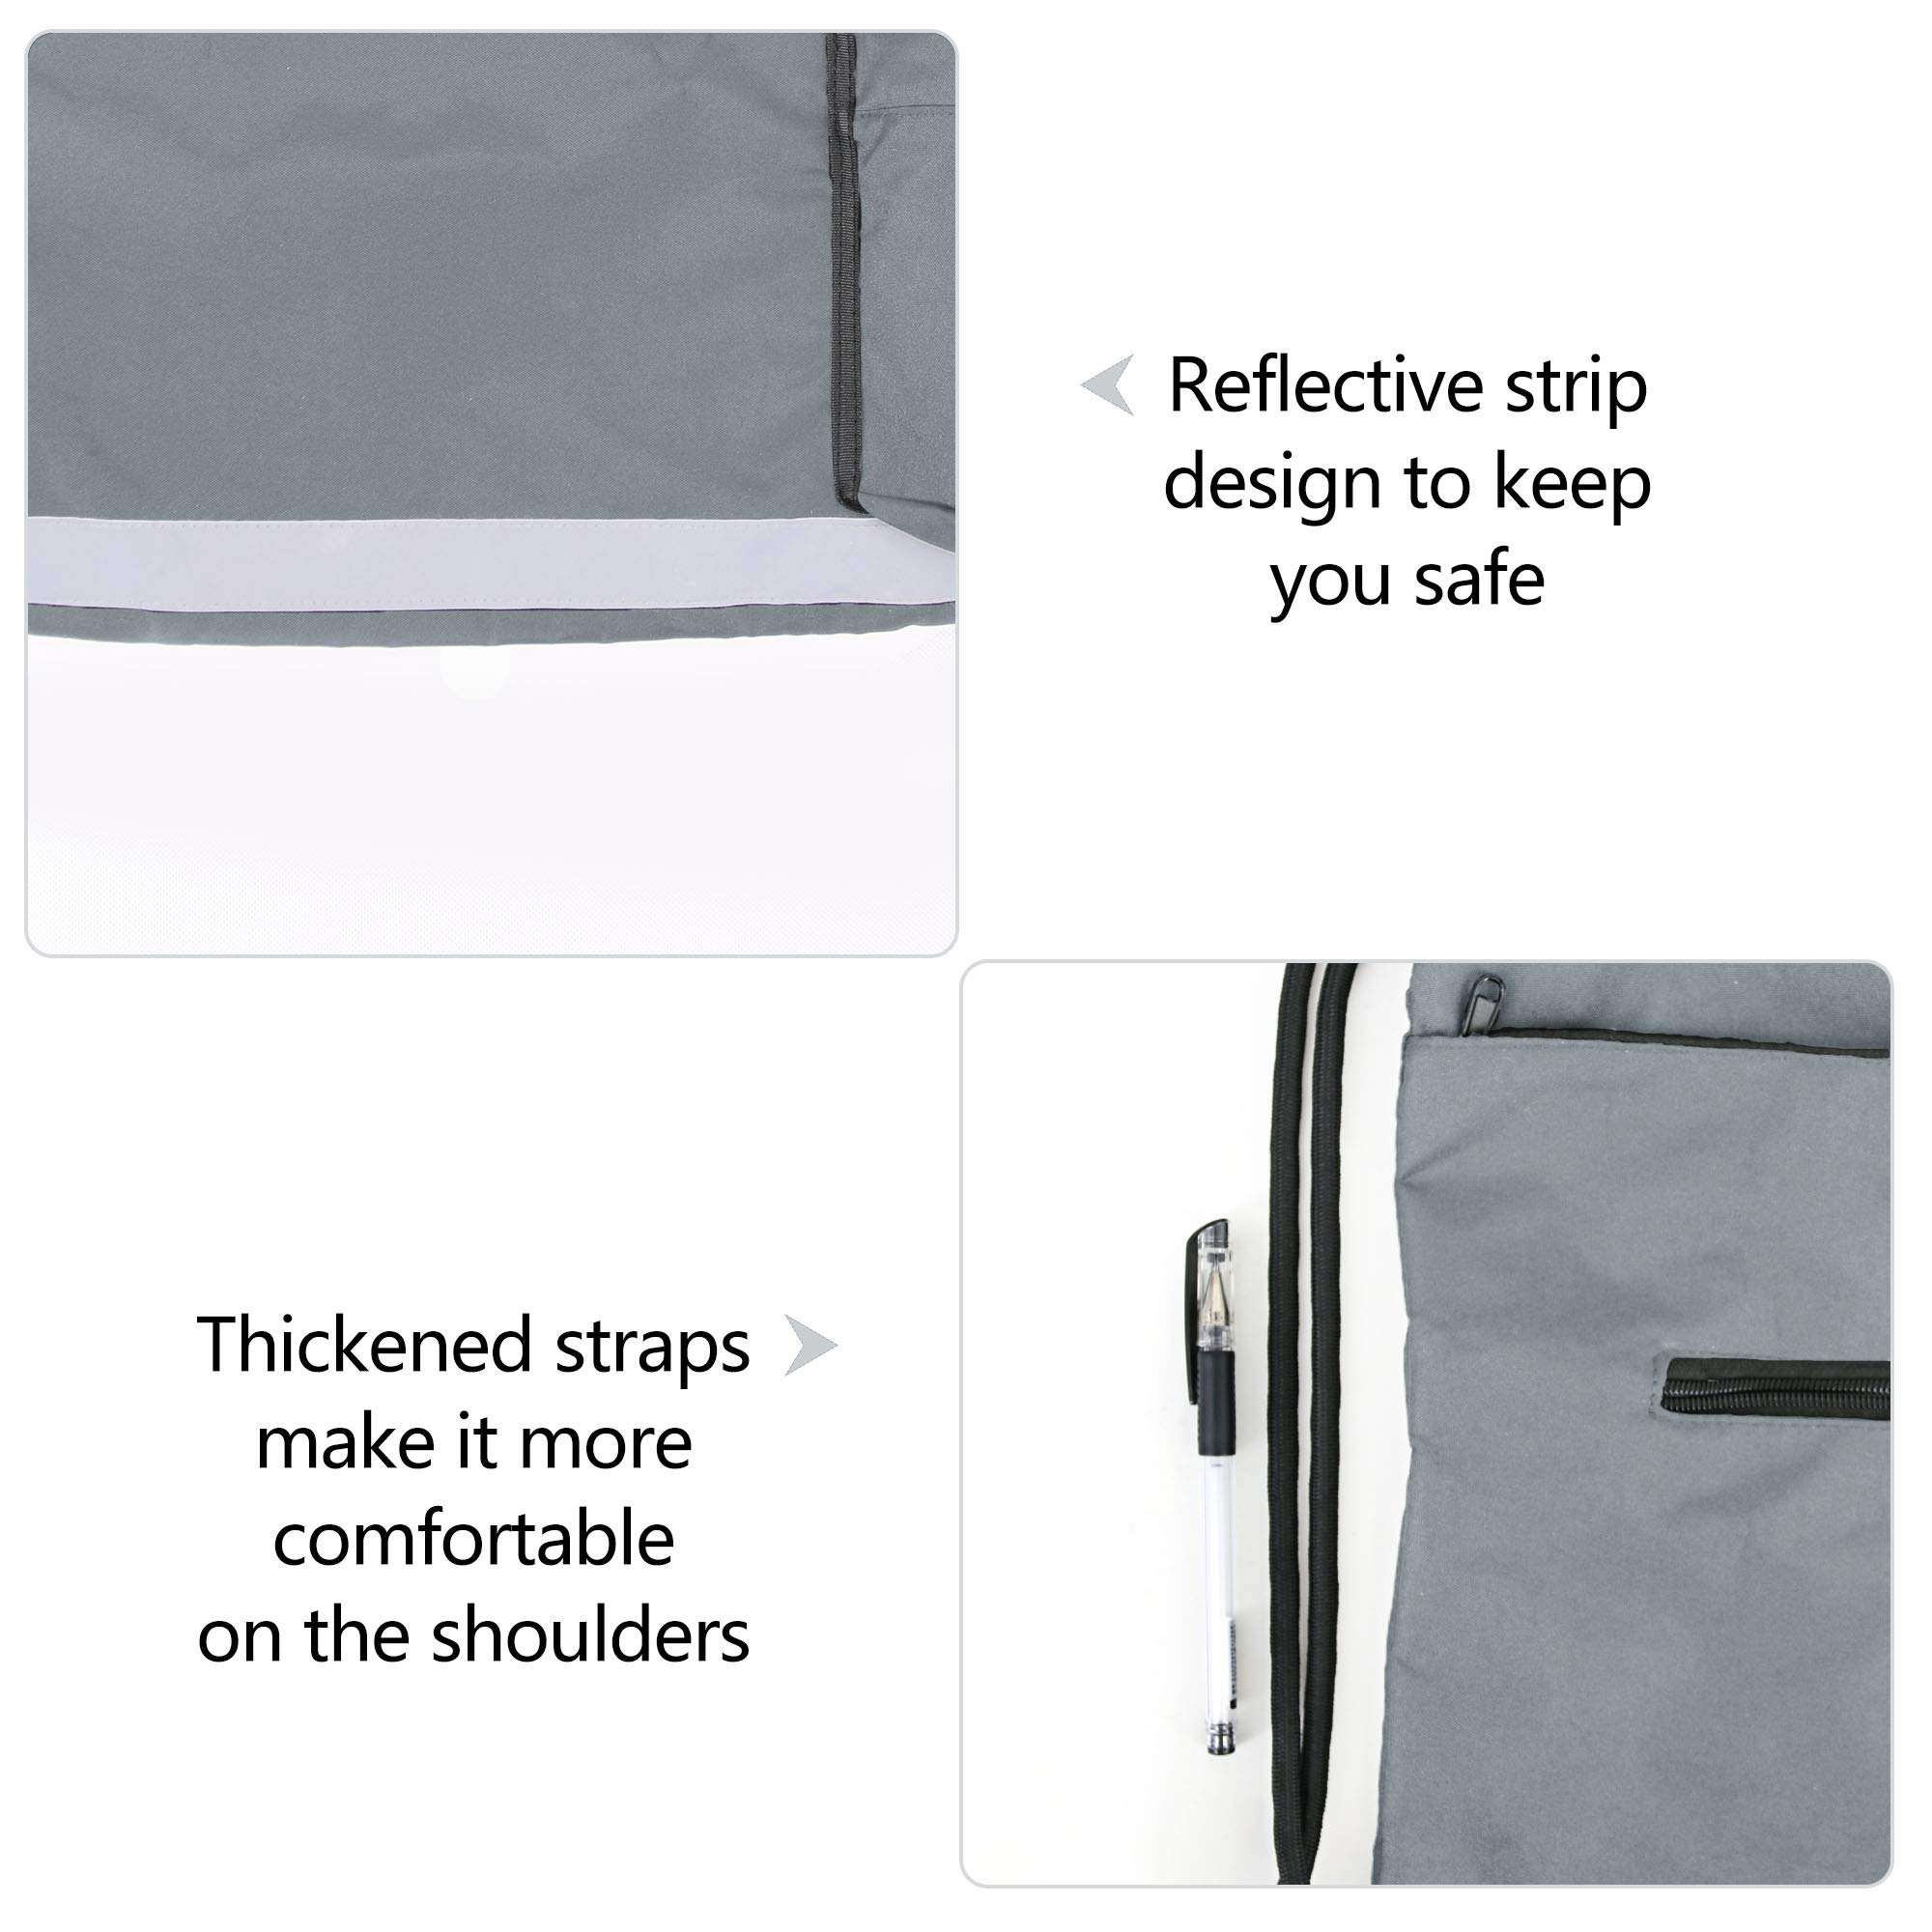 new Wholesale Waterproof Cheaper Custom Logo Lightweight Daypack Foldable Drawstring Shopping Backpack Bag Soccer Sport Bag